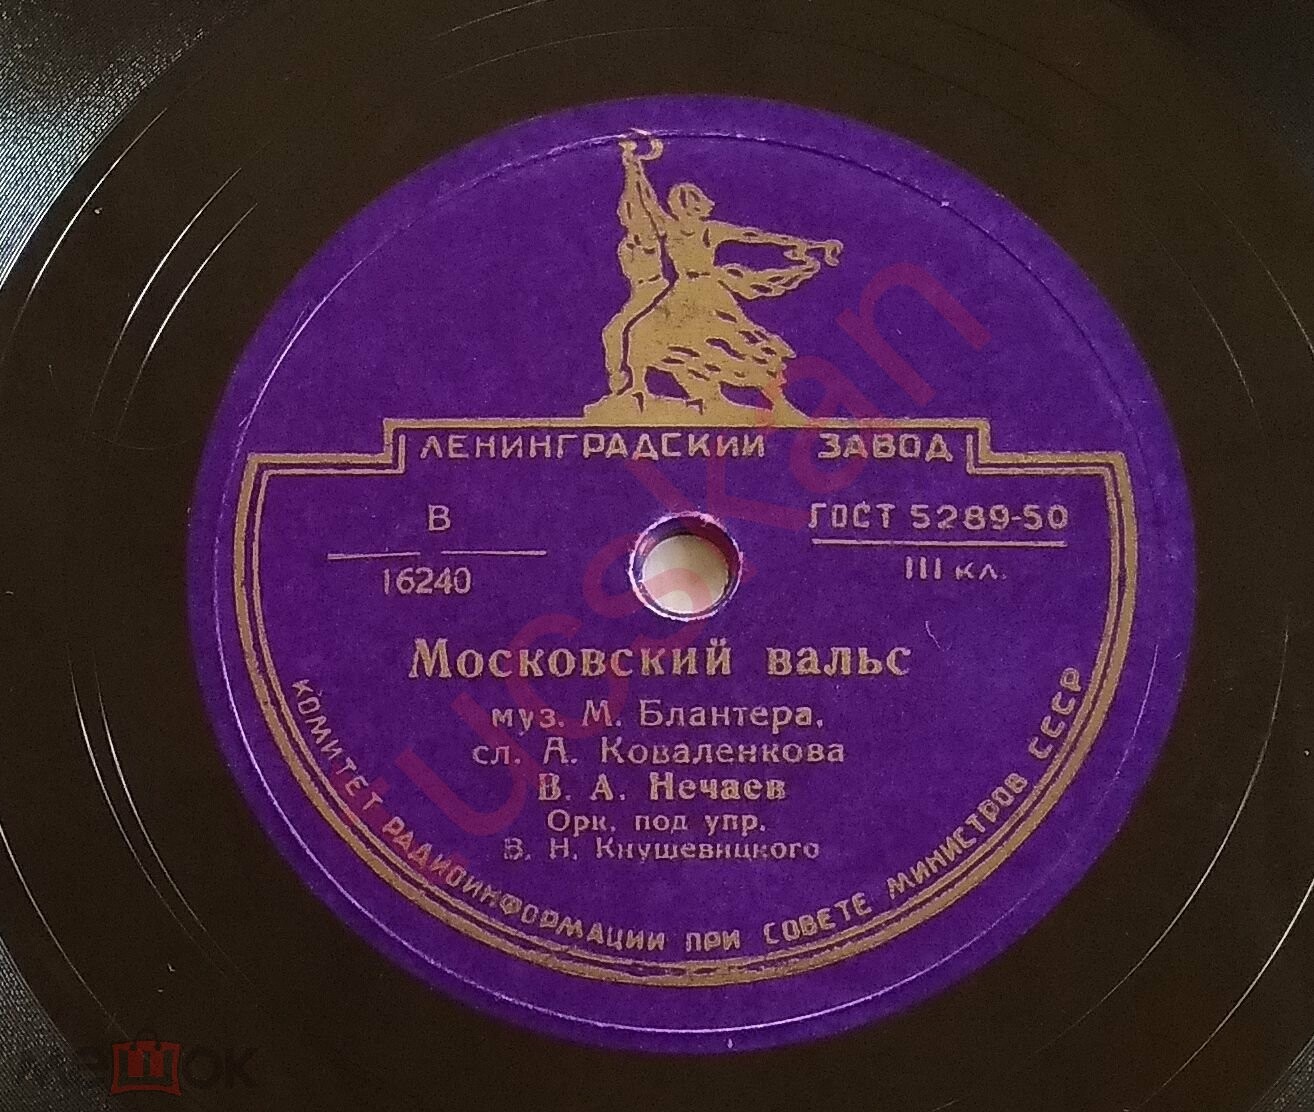 В. А. Нечаев – Студенческая песня / Московский вальс